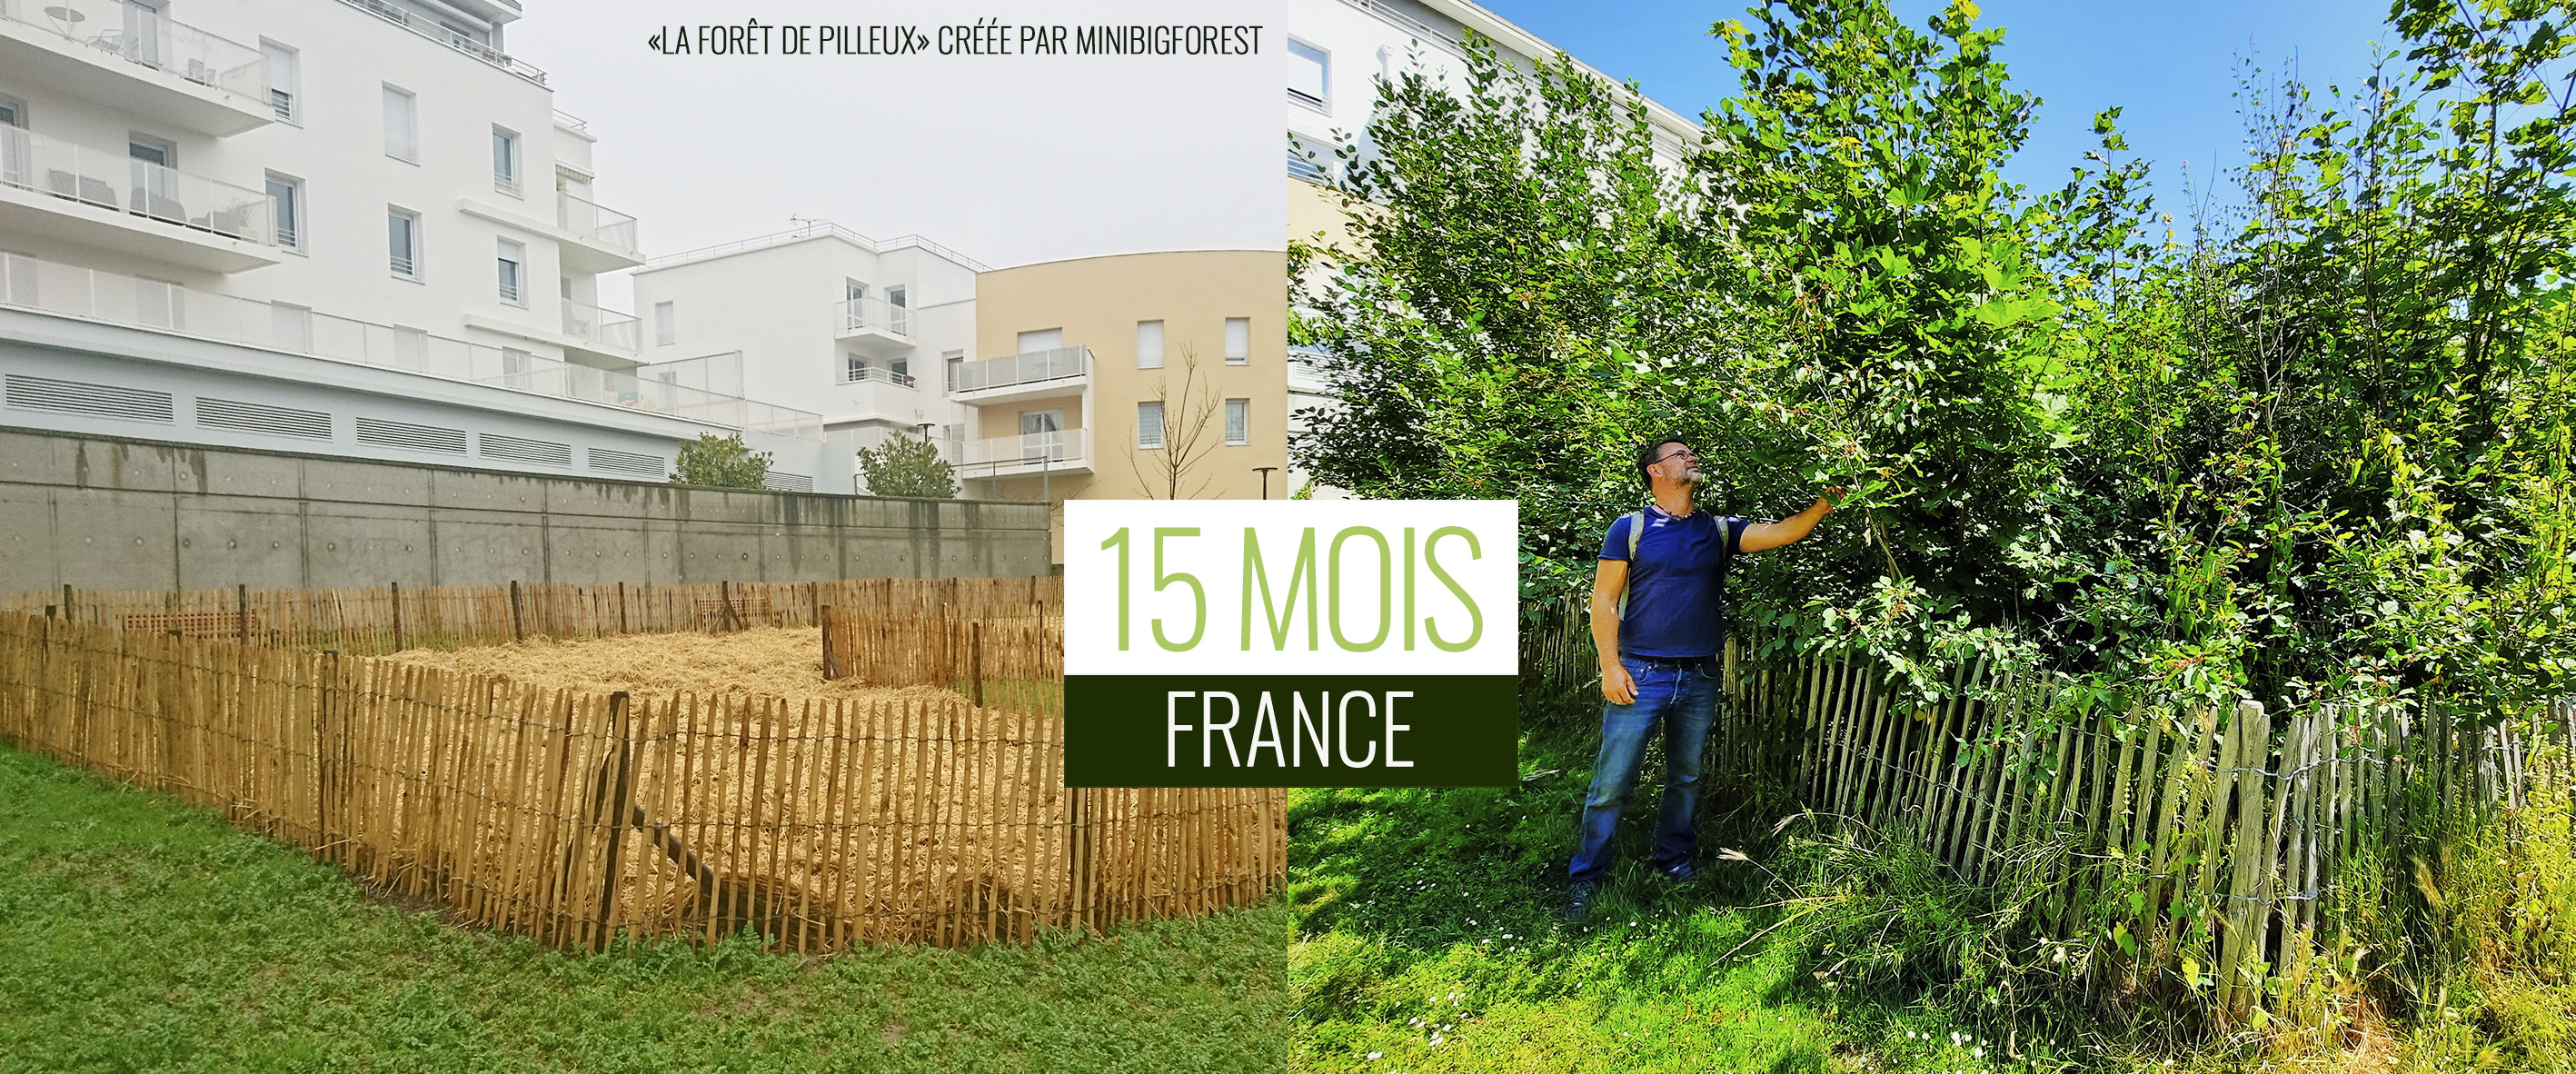 Ecolution de la forêt de Pilleux (Nantes) sur 15 mois